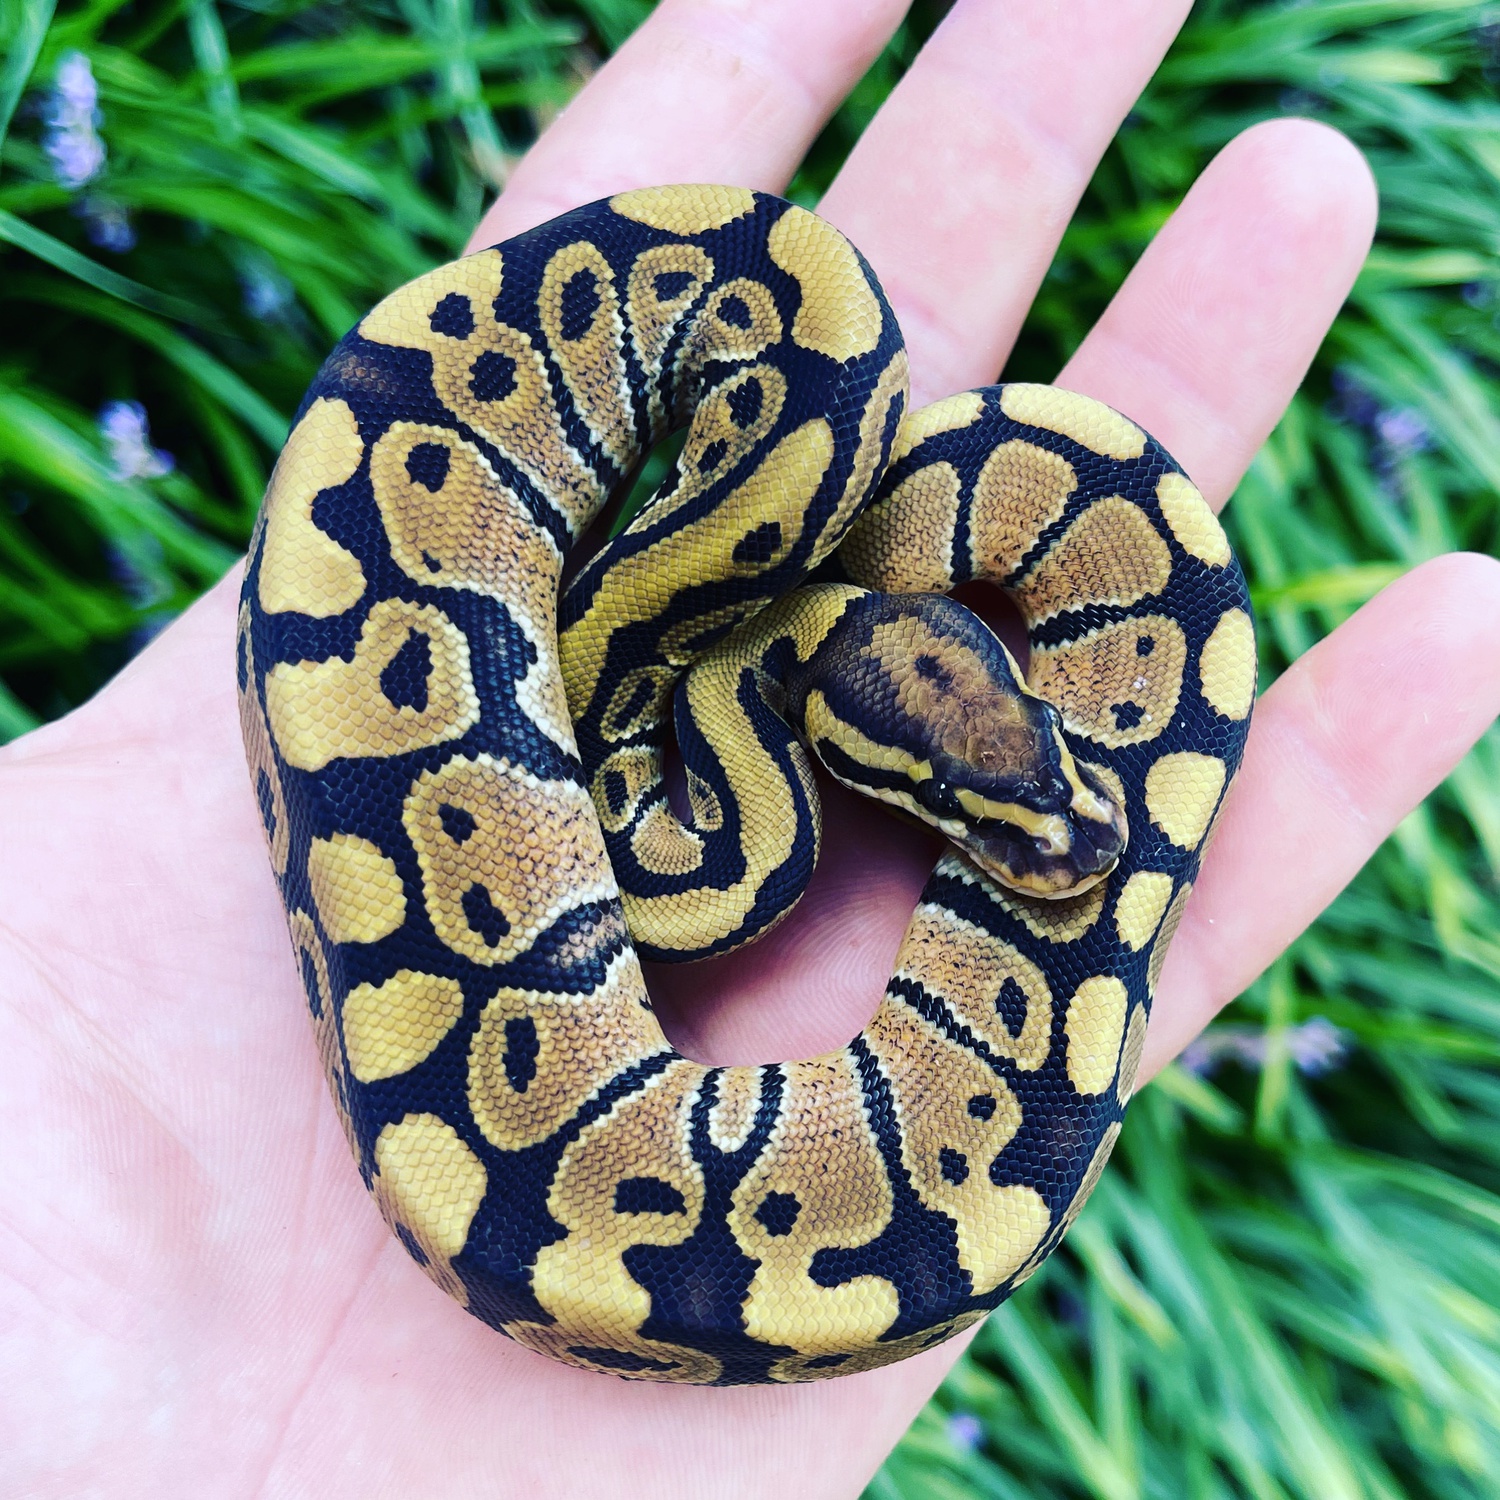 Vanilla Ball Python by Noah’s Ark Reptiles